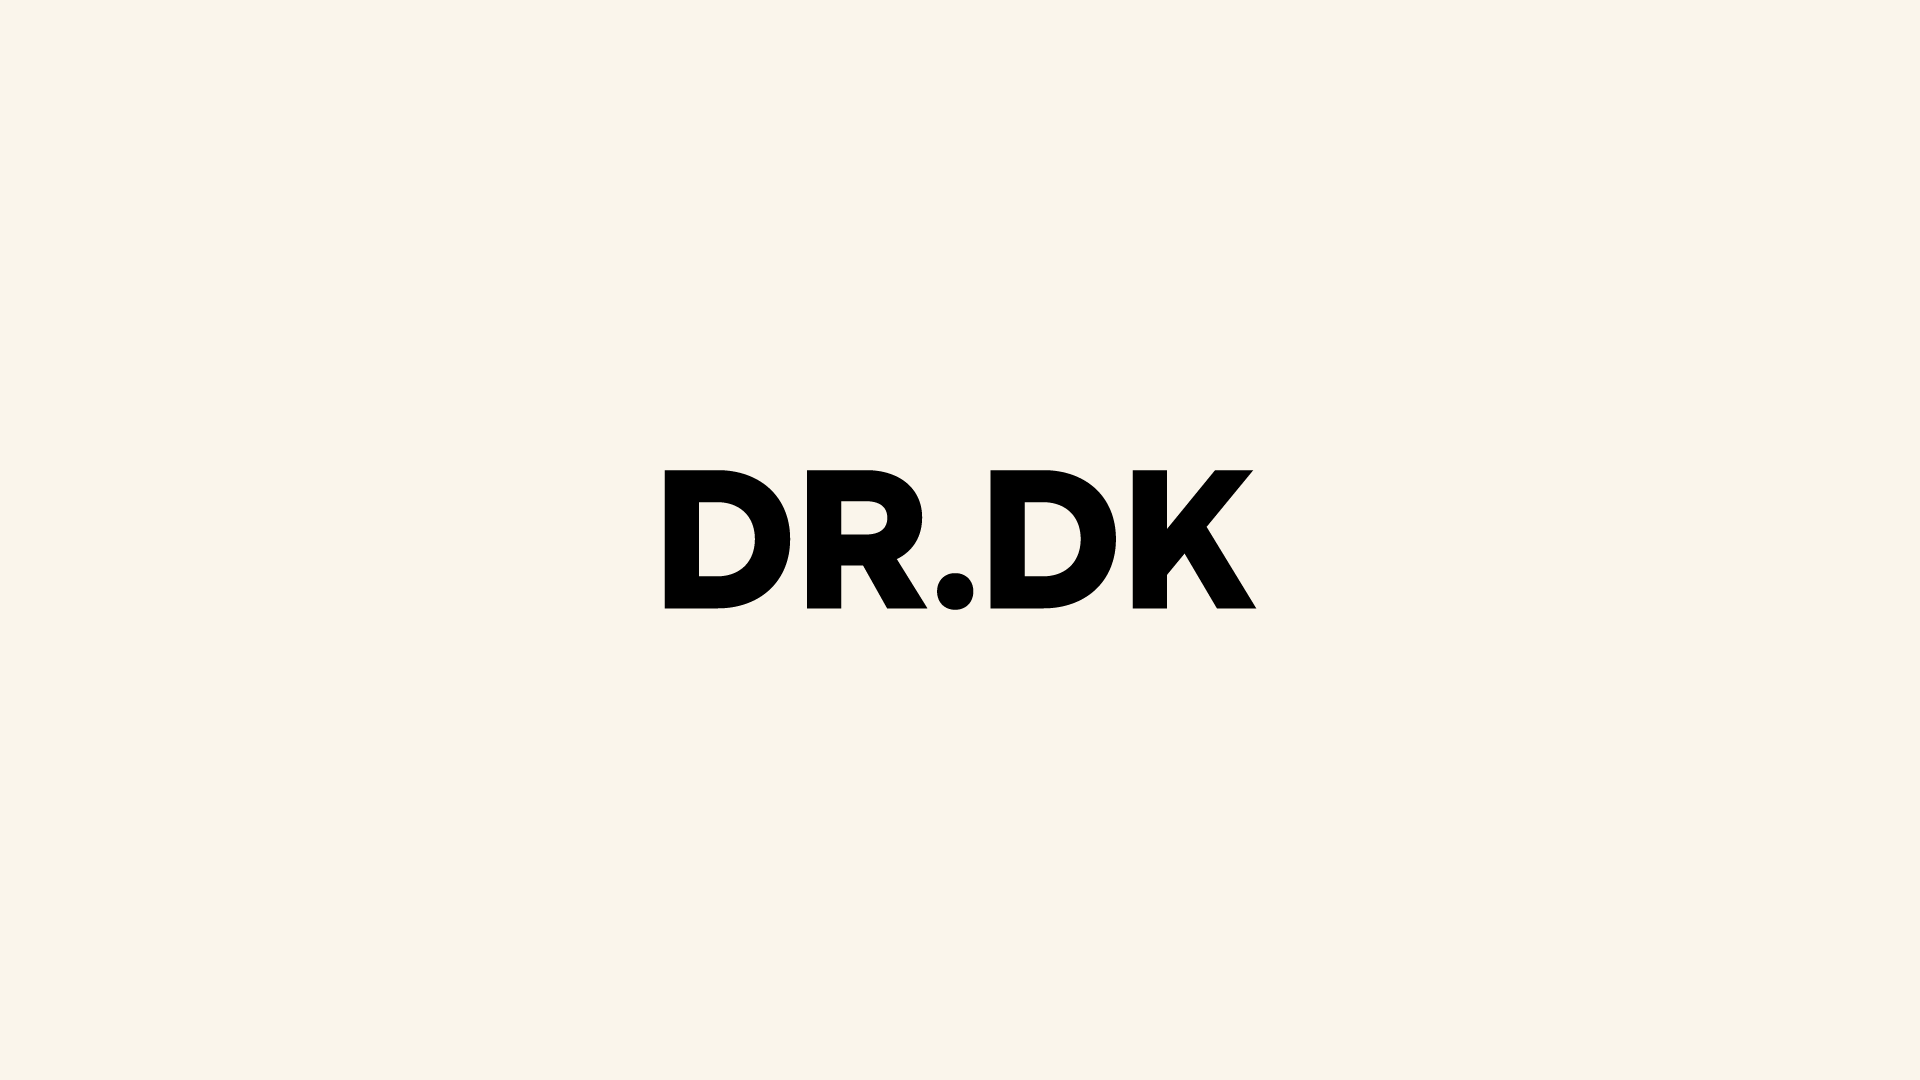 DR.DK